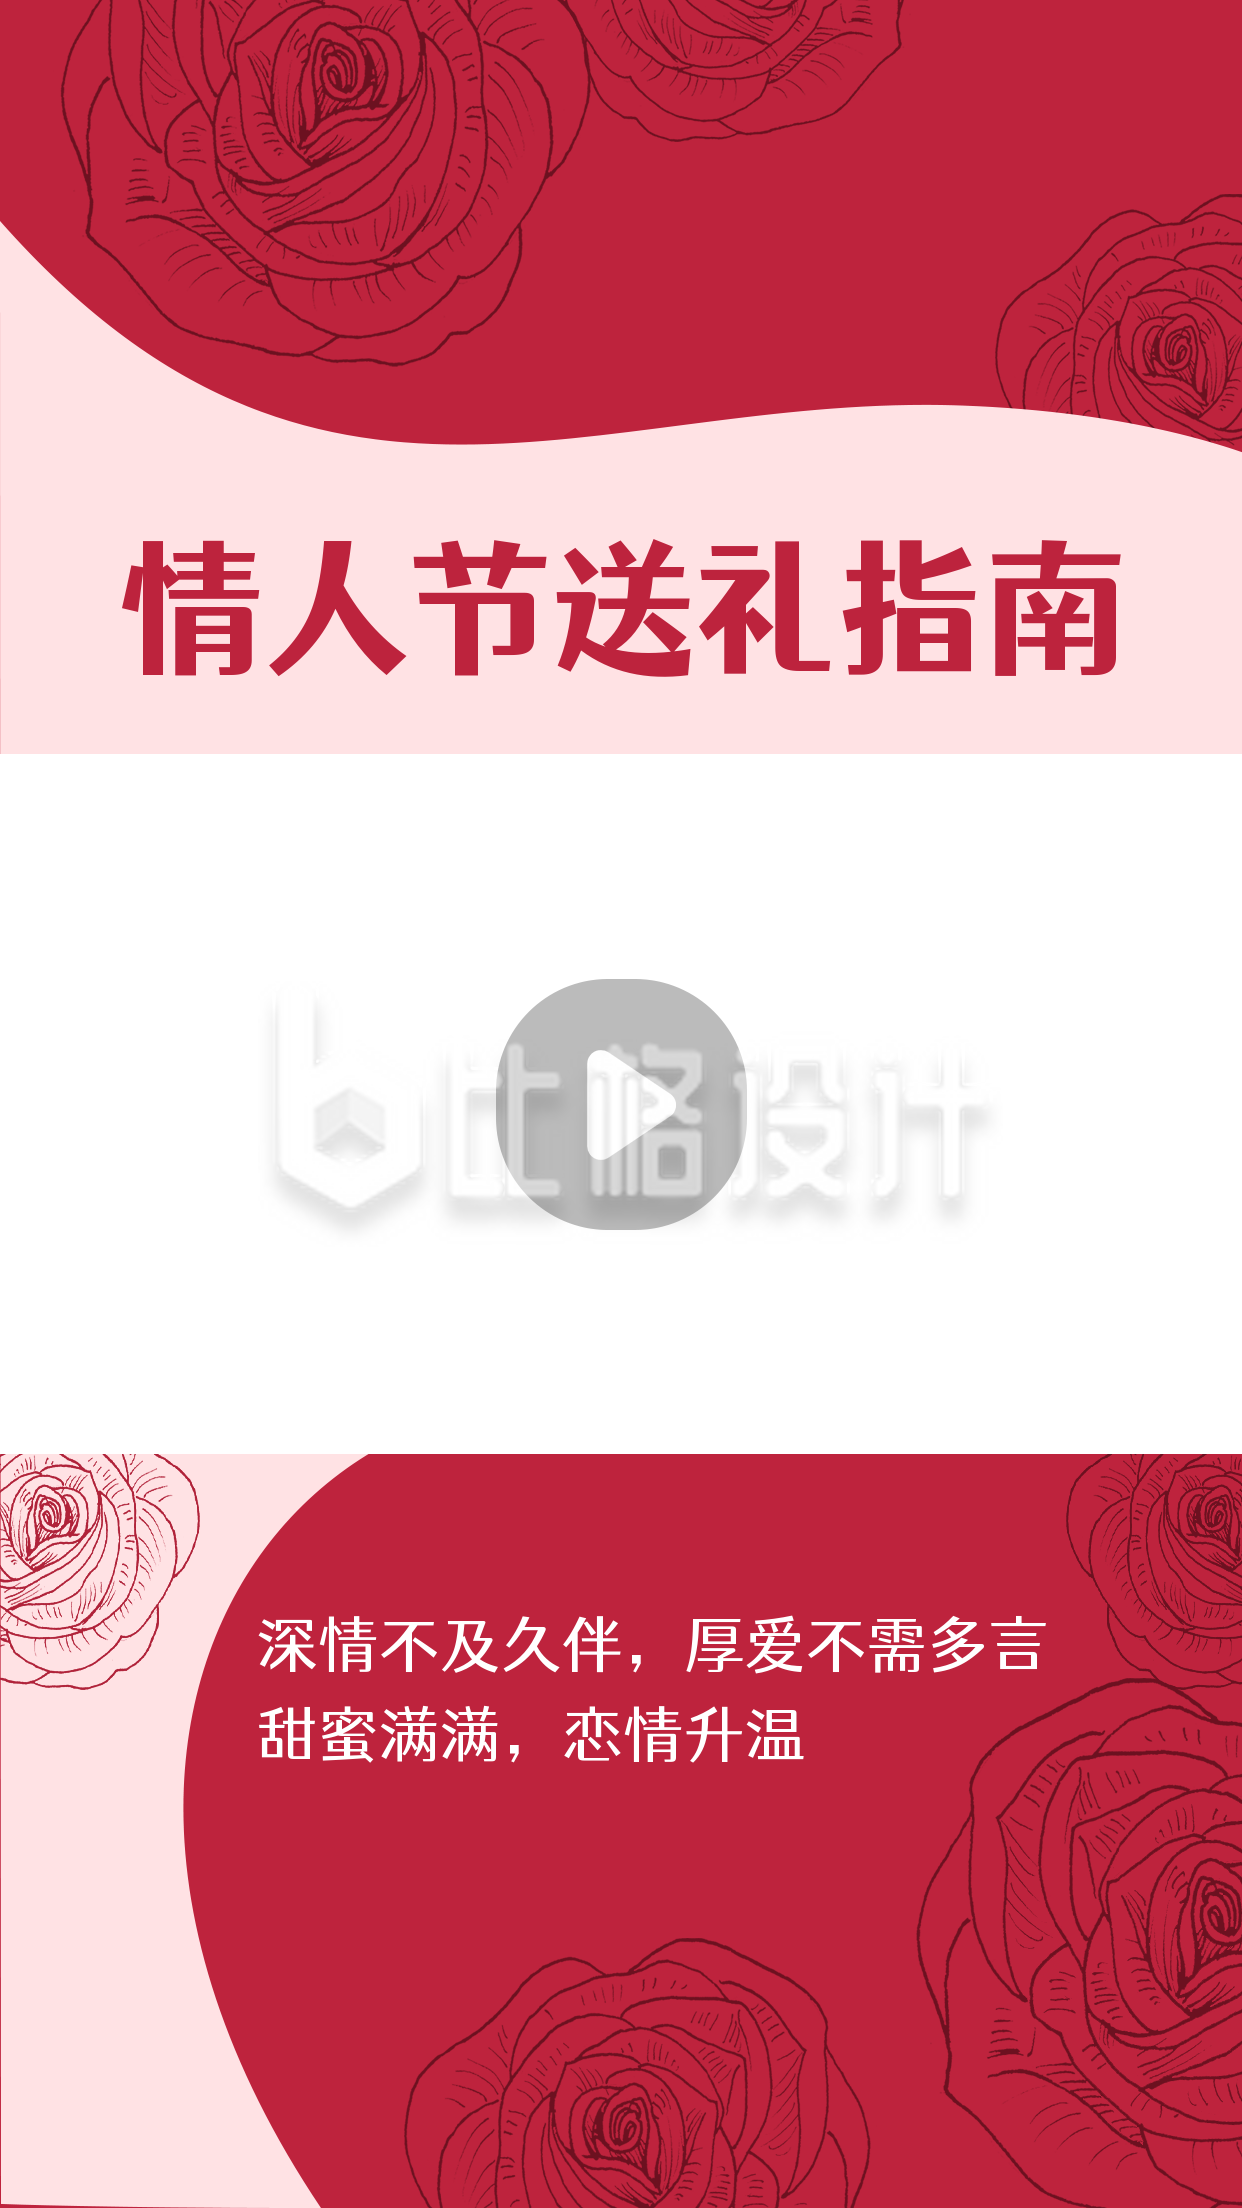 520情人节送礼指南红色浪漫视频边框